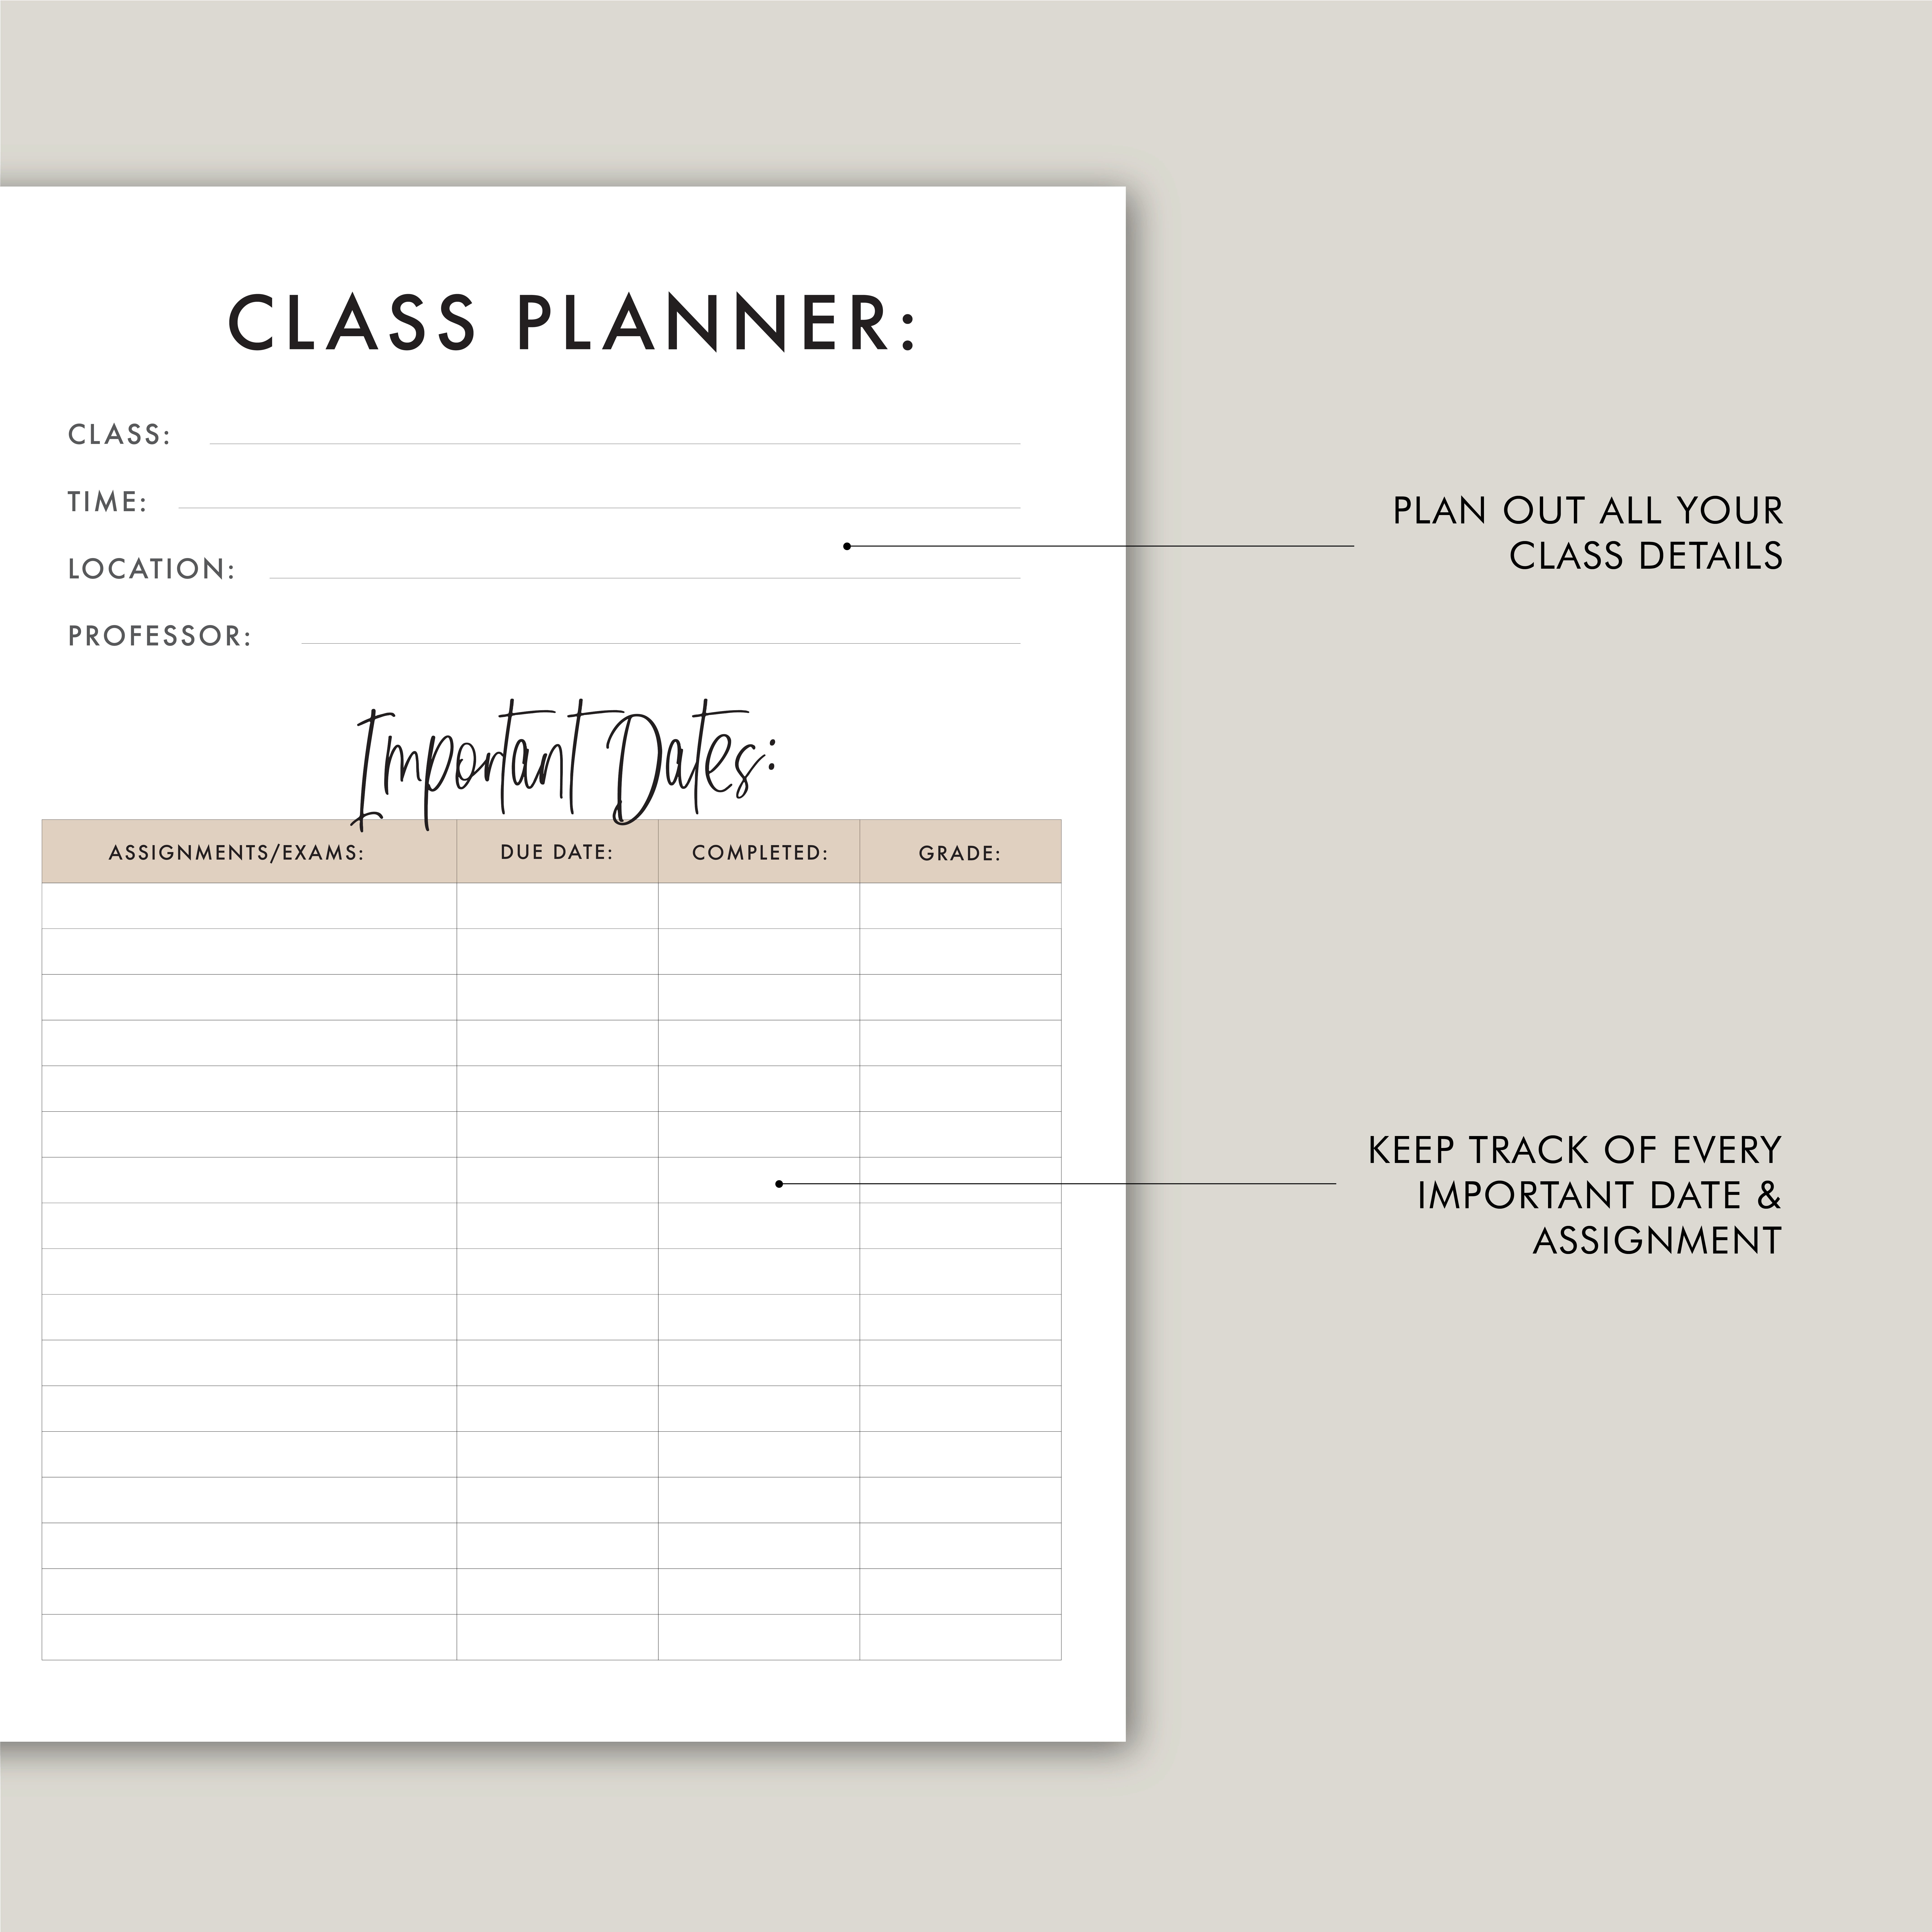 class planner1 11